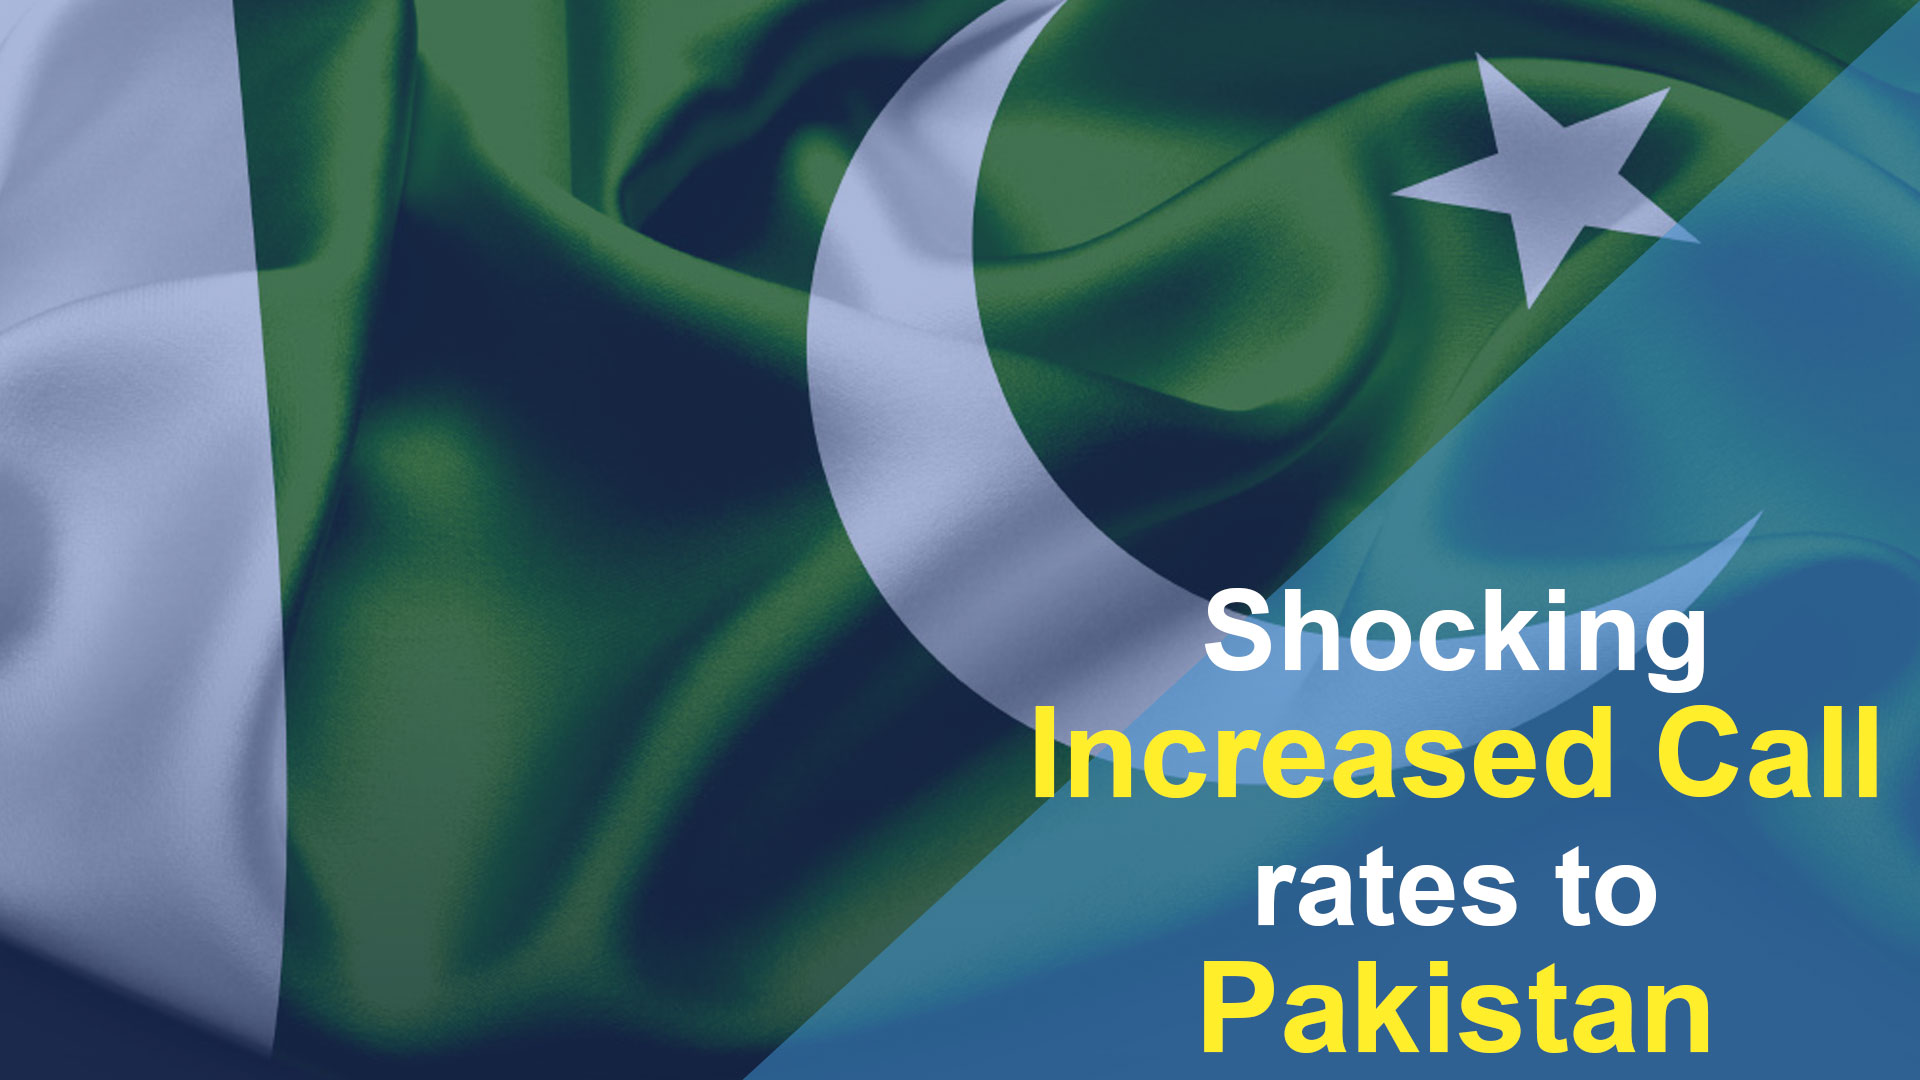 زيادة صادمة في أسعار المكالمات إلى باكستان